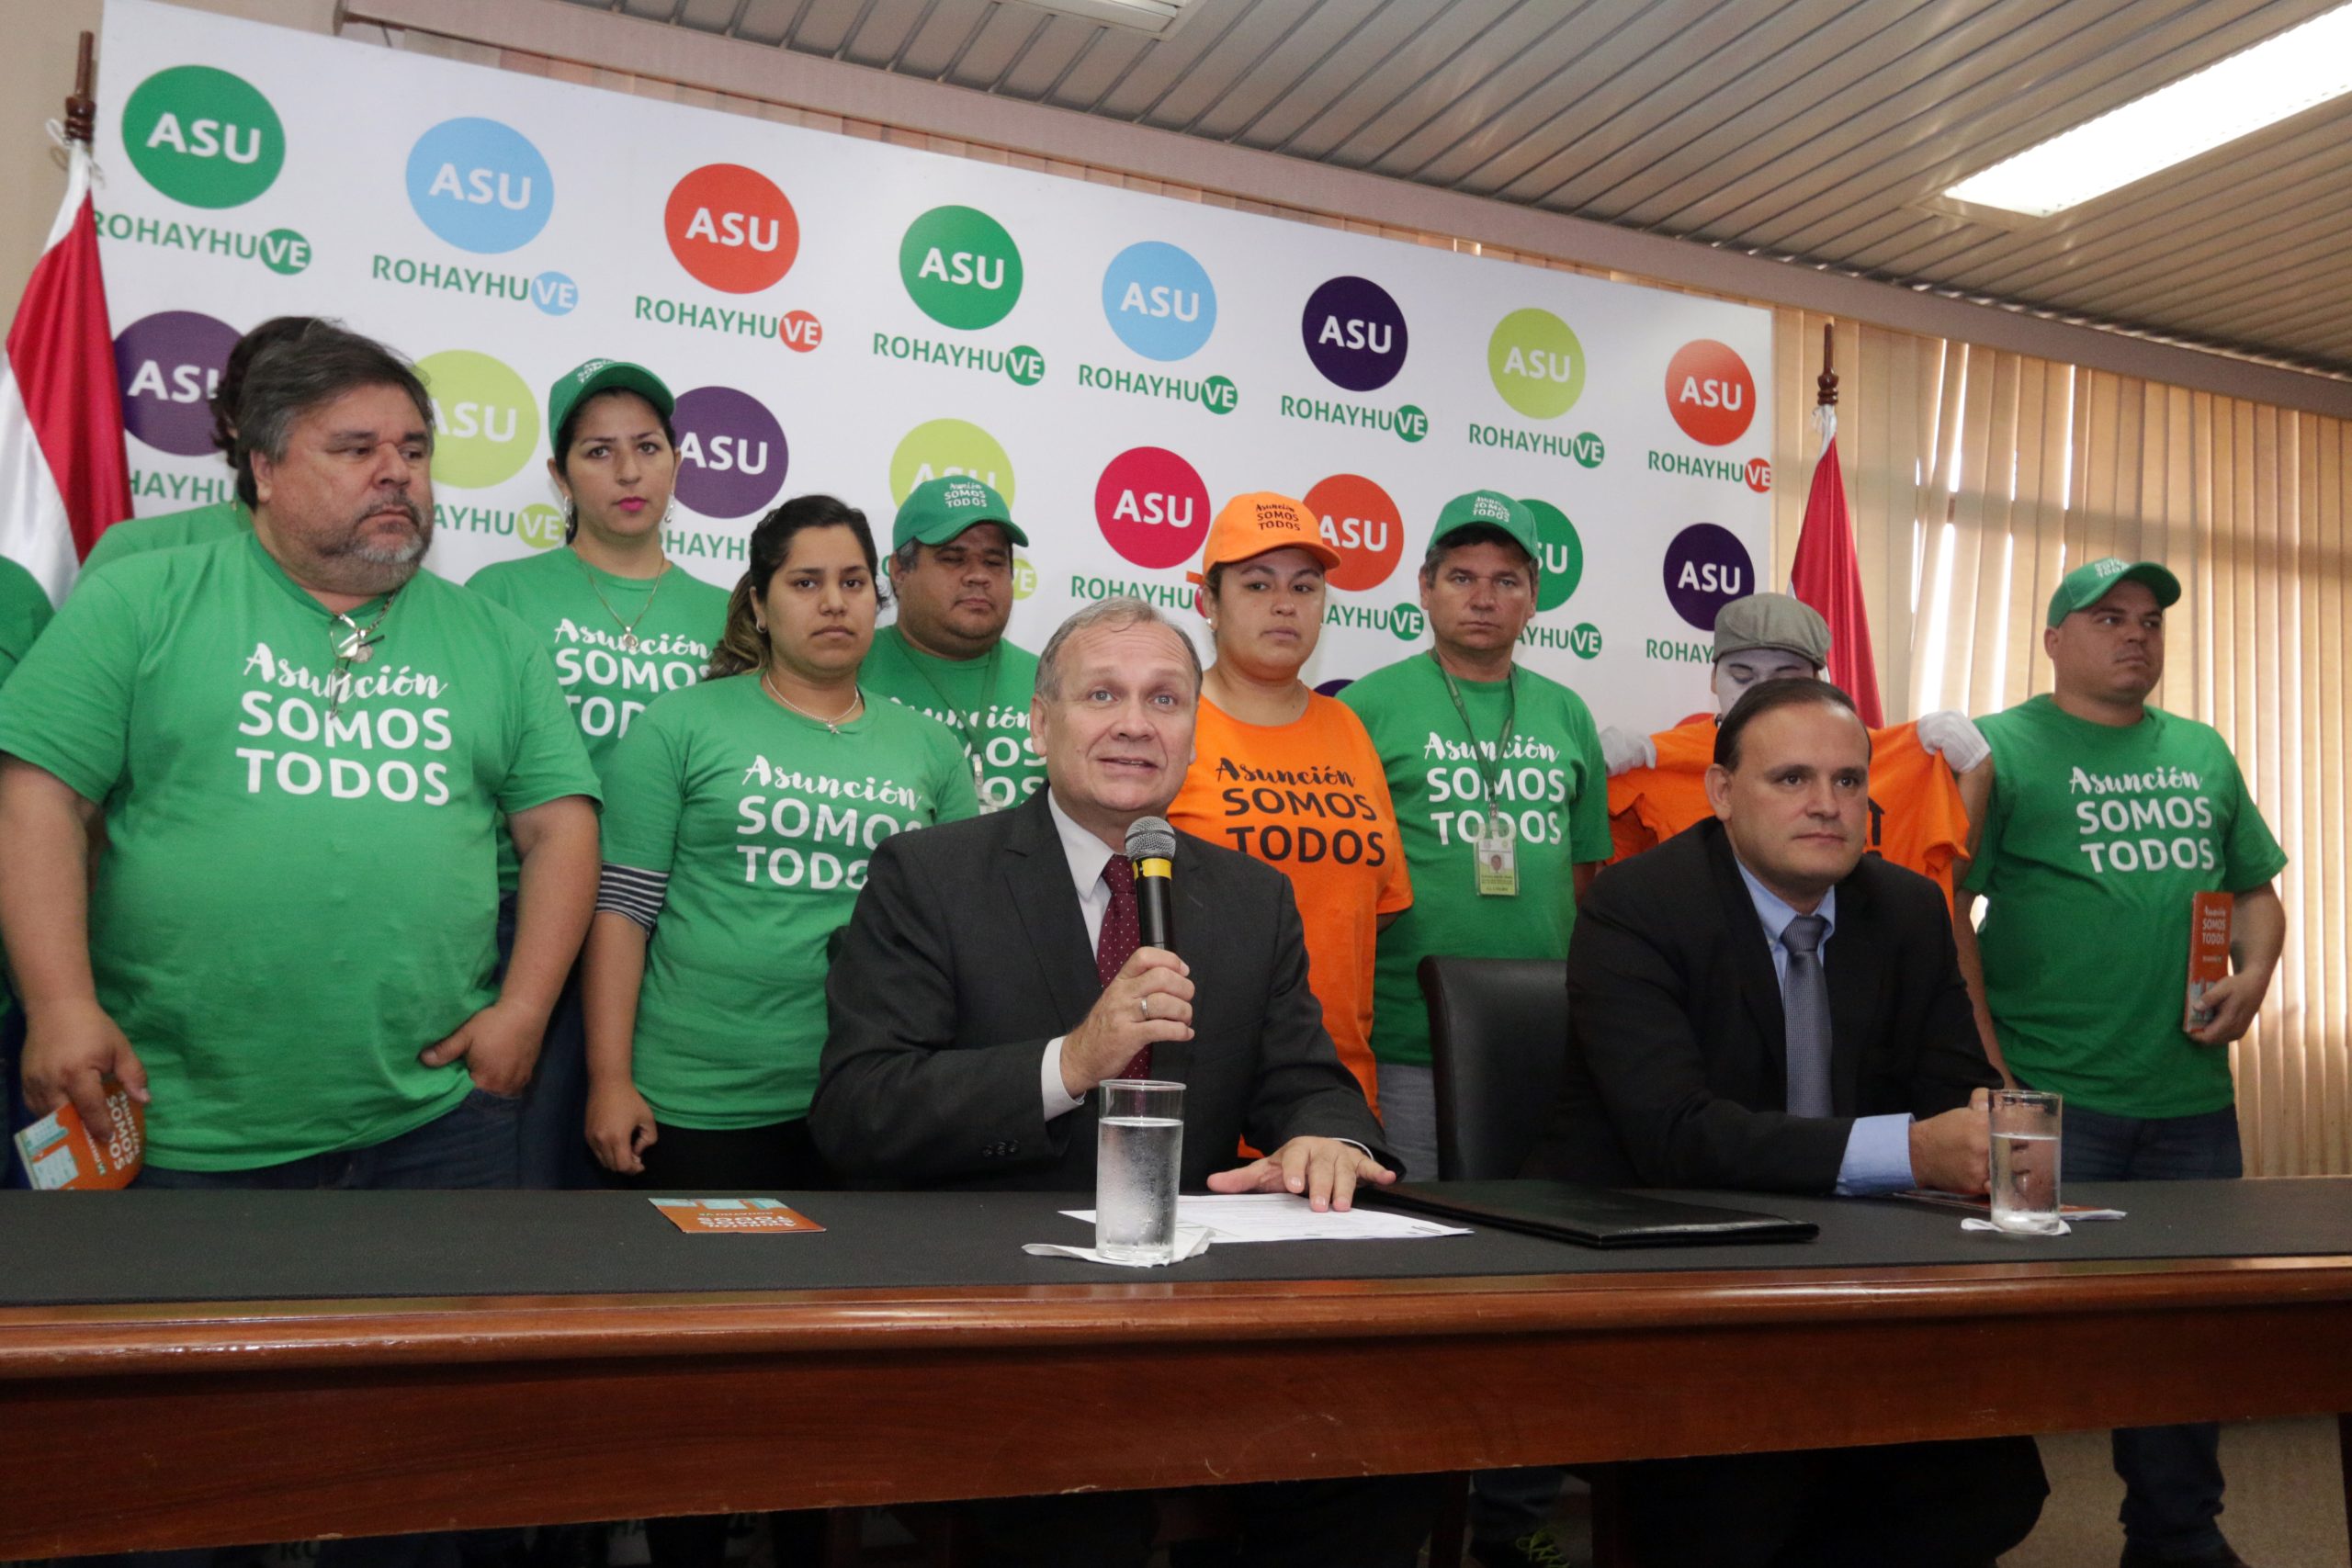 Proporcionaron primeros resultados de la Campaña Asunción somos Todos